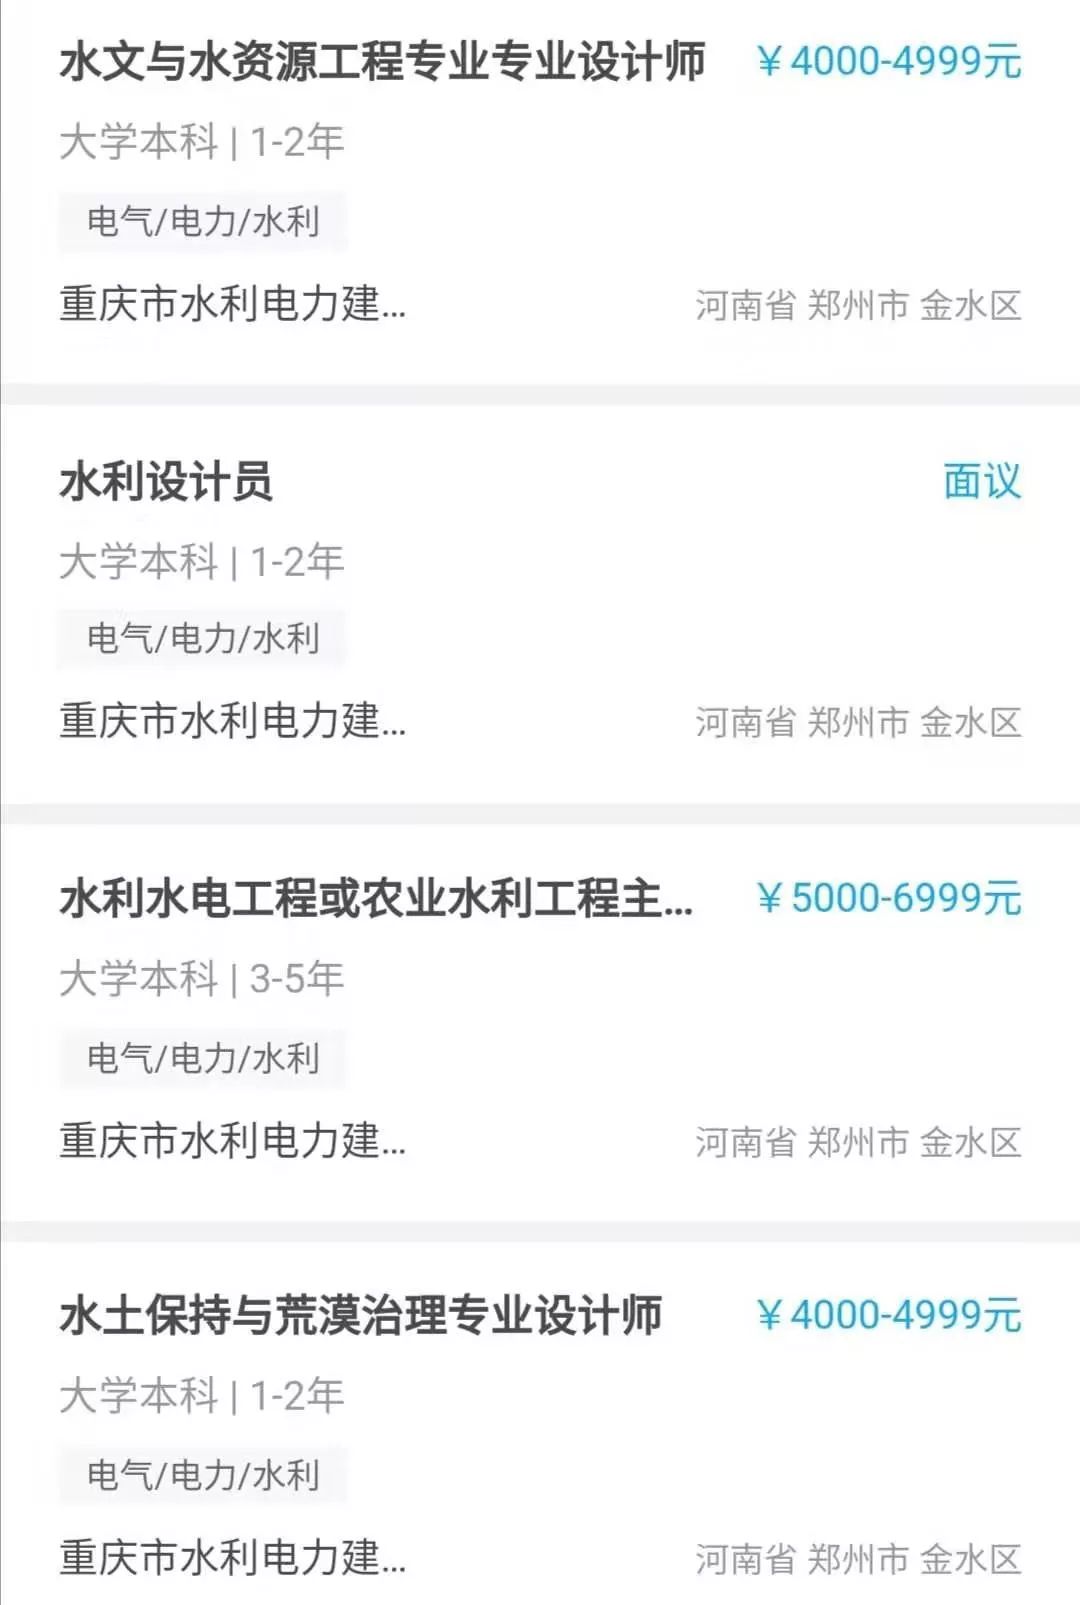 2020年河南省春季大型网络公益招聘月